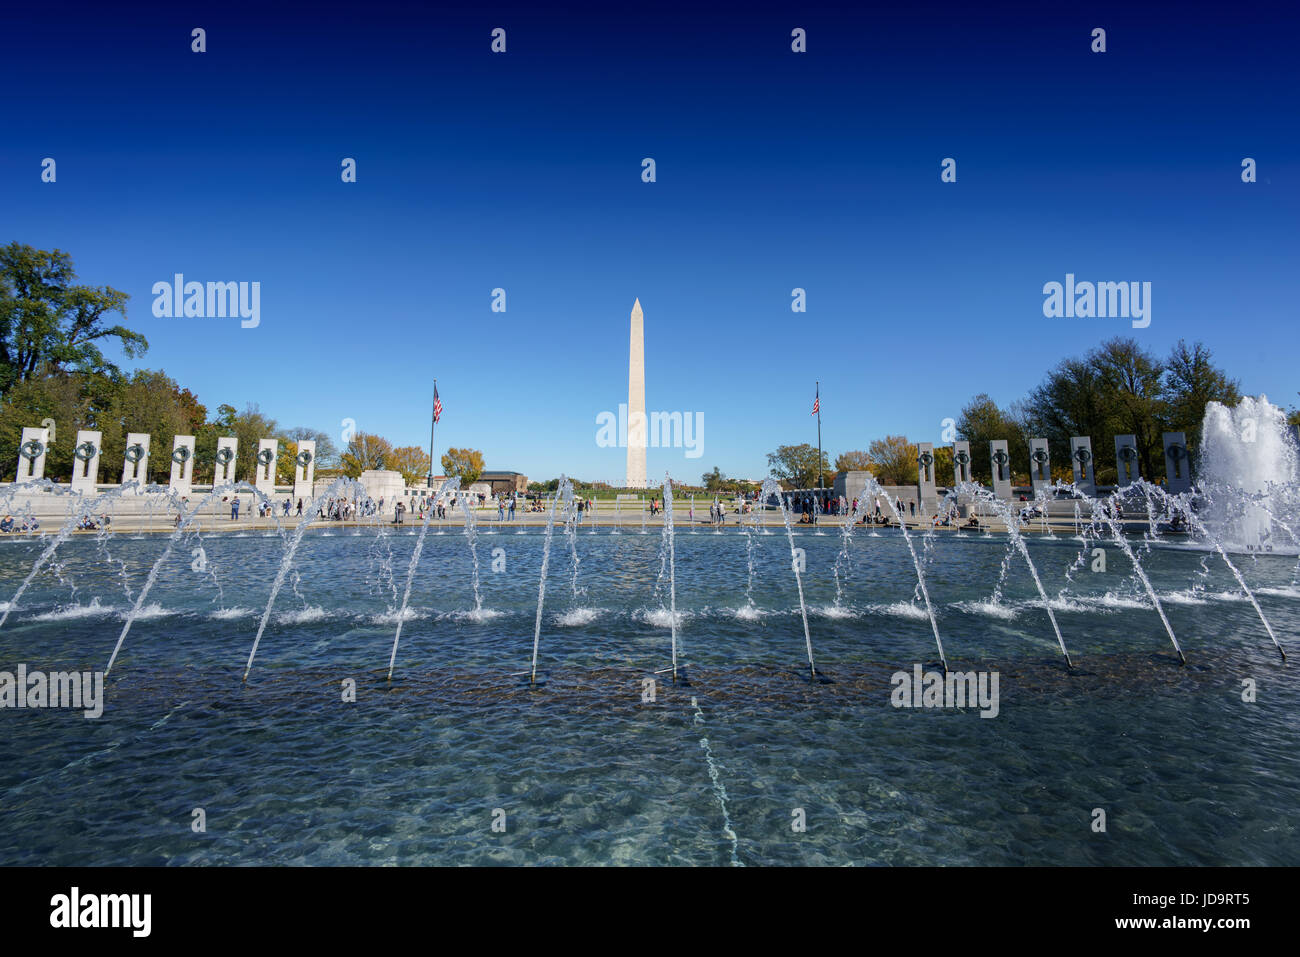 Öffentlichen Raum Wasser Feature Brunnen gegen blauen Himmel, Washington DC, USA. Hauptstadt Washington Usa 2016 fallen Stockfoto